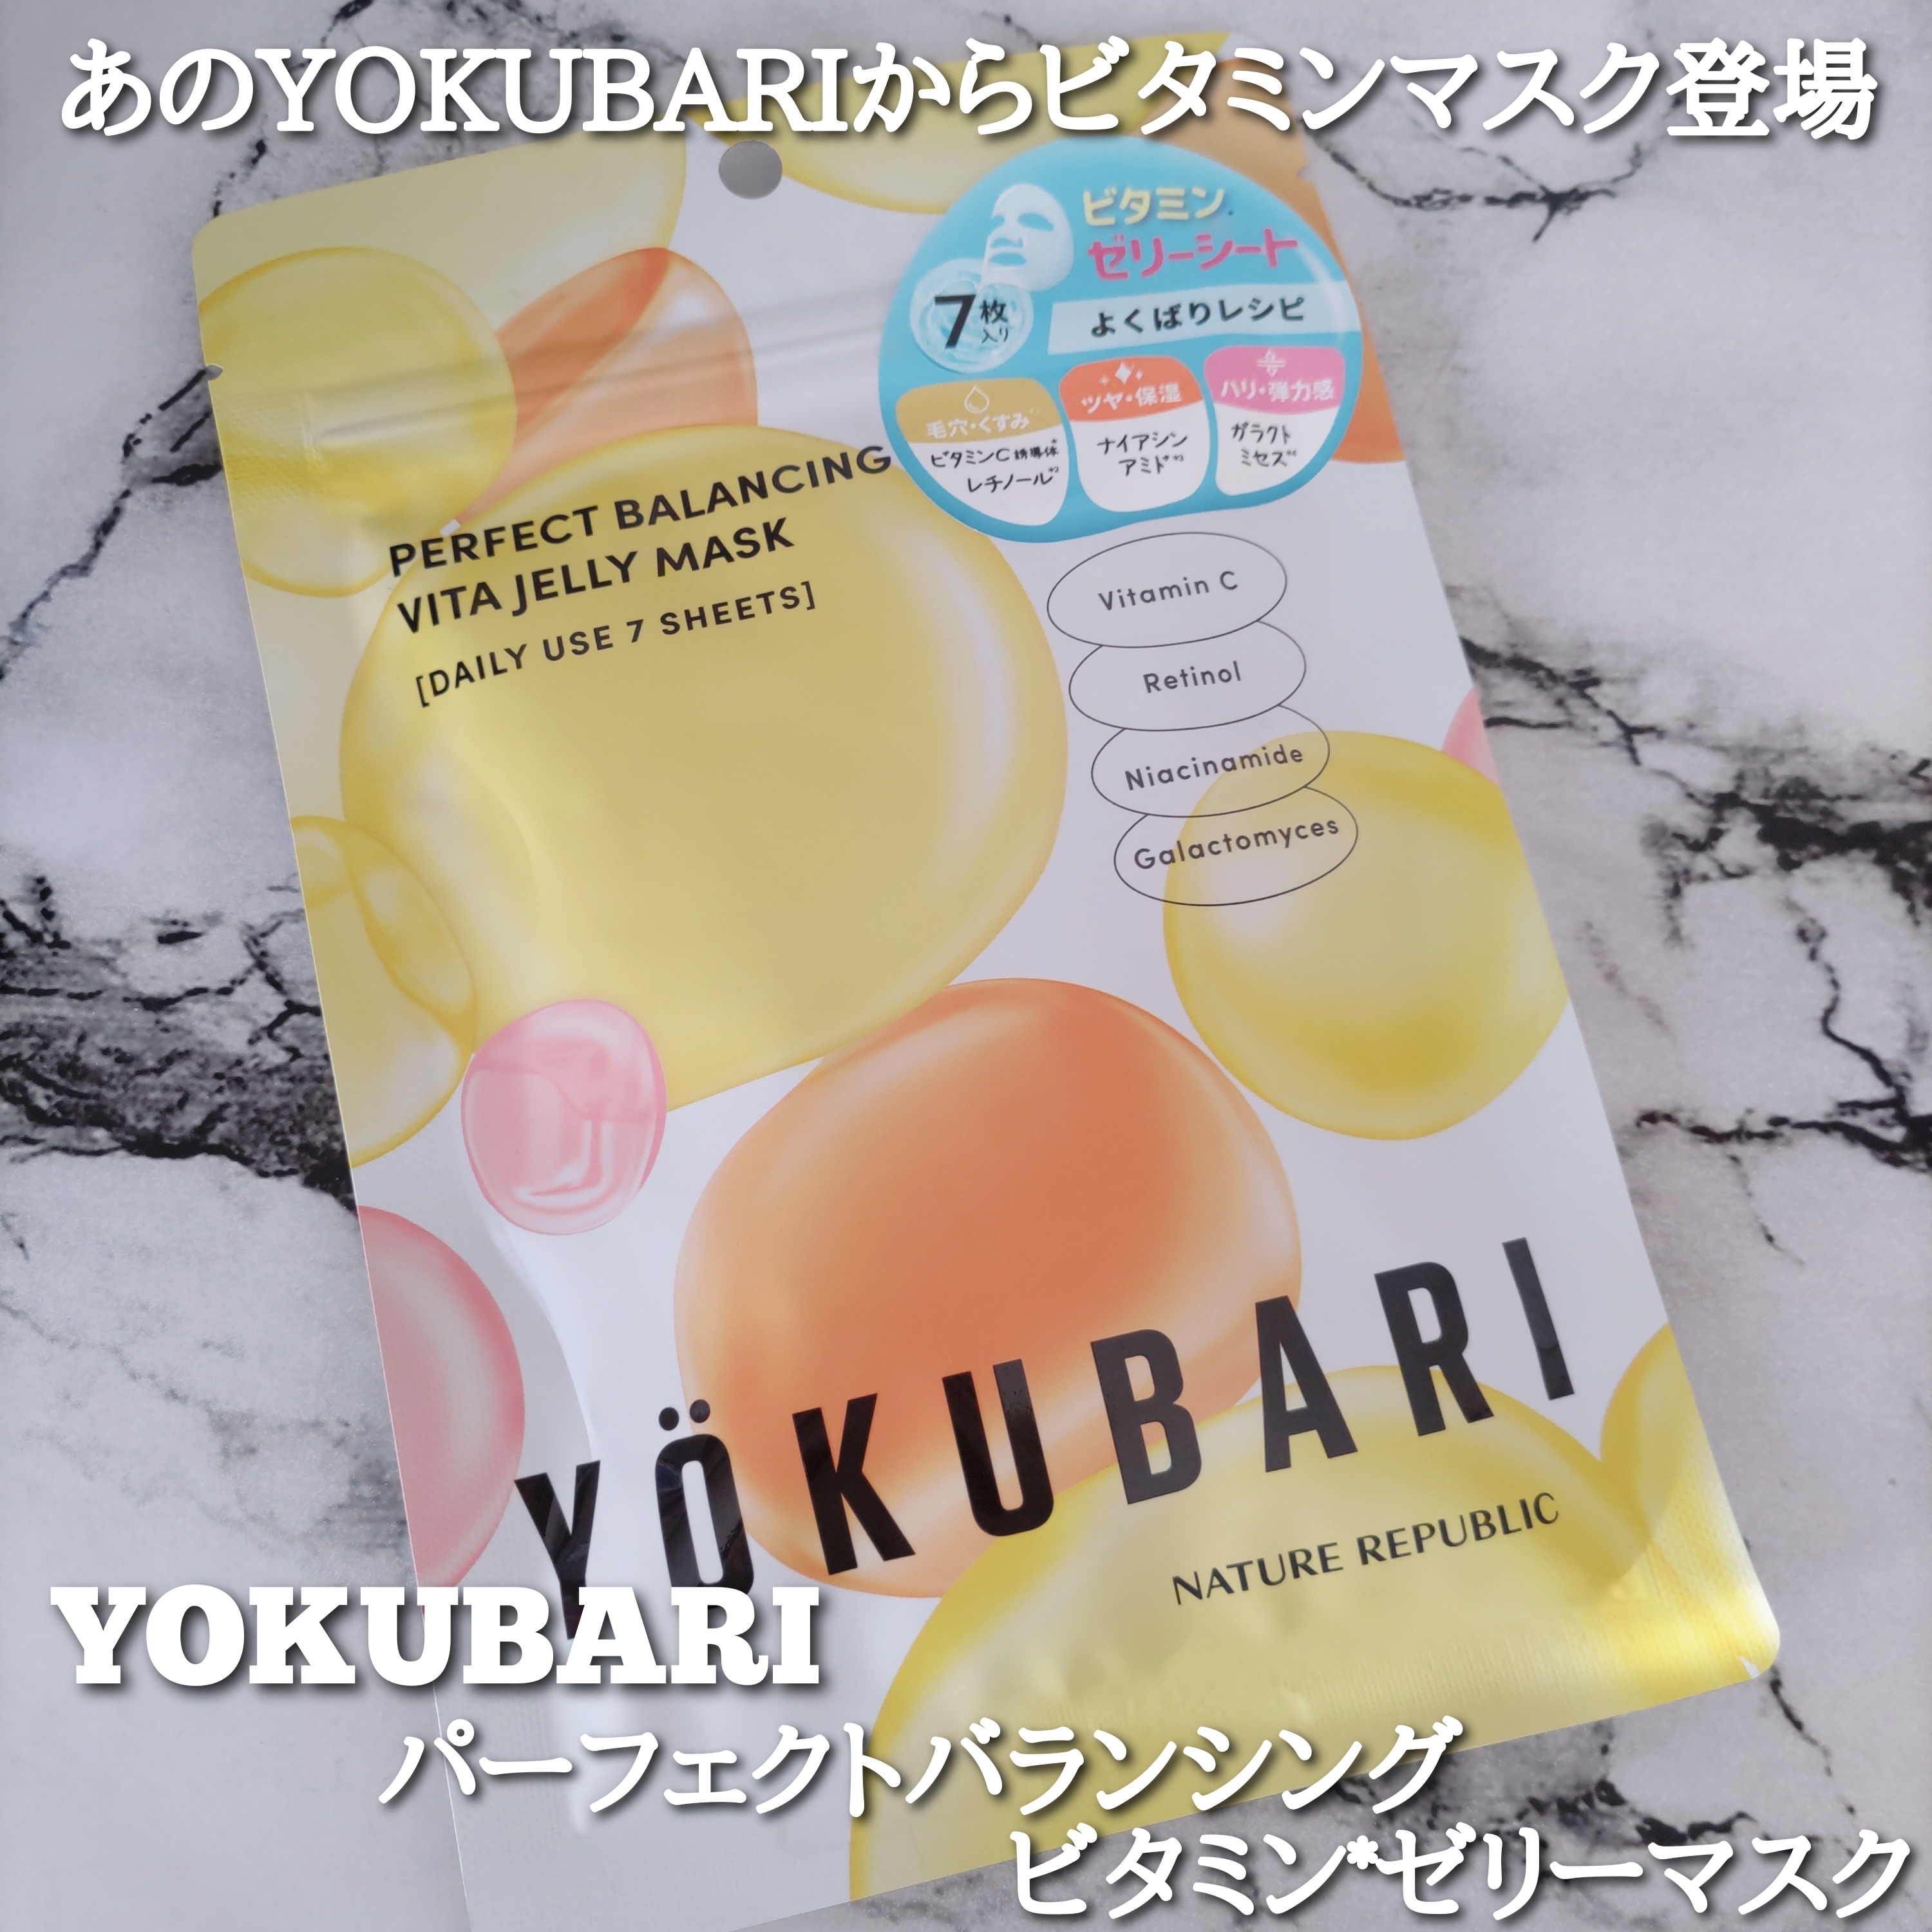 ネイチャーリパブリック YOKUBARI パーフェクトバランシング ビタミンゼリーマスクを使ったYuKaRi♡さんのクチコミ画像1